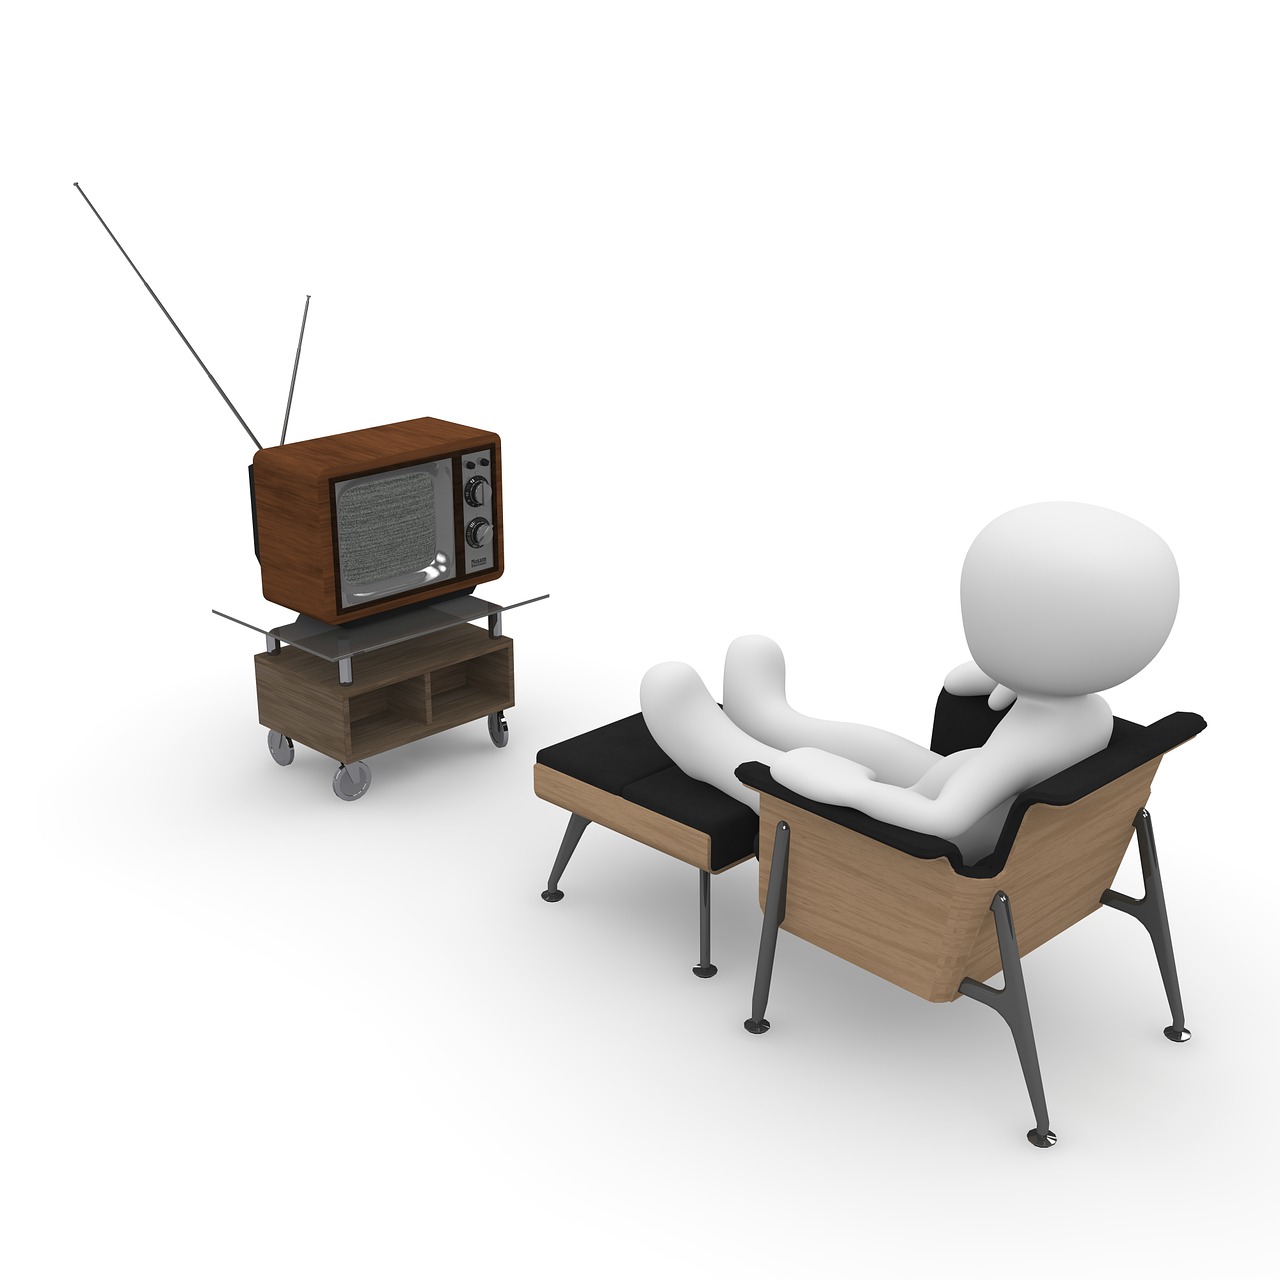 ¿Qué te apetece ver en la tele? Foto de Pixabay